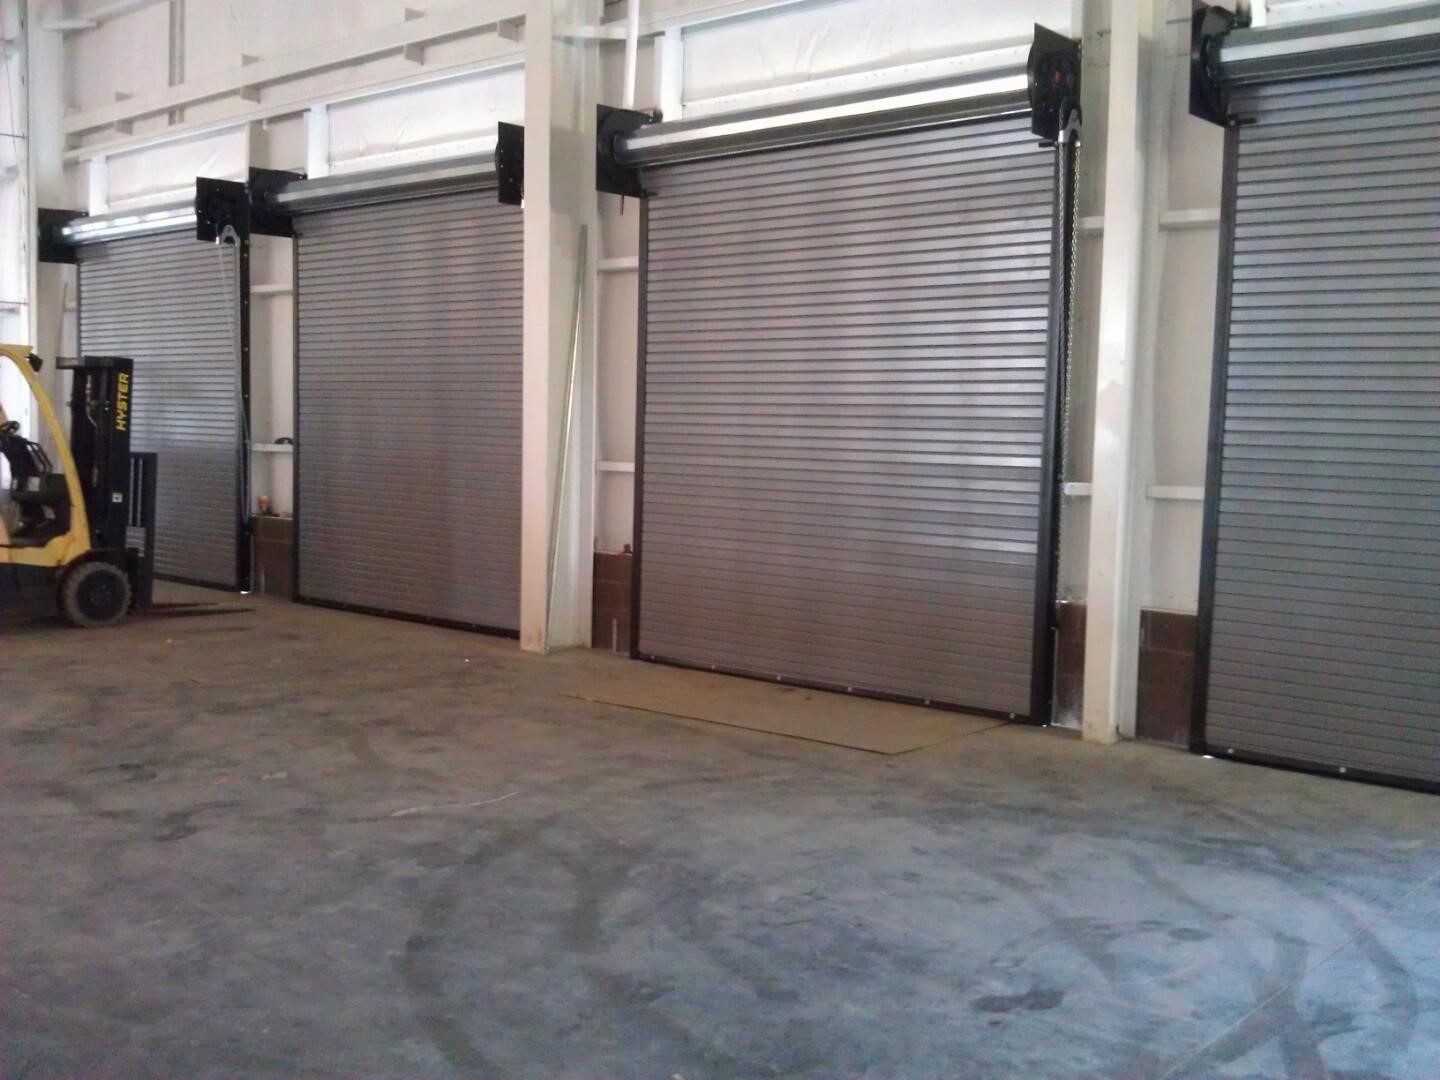 Warehouse rolling doors - costco